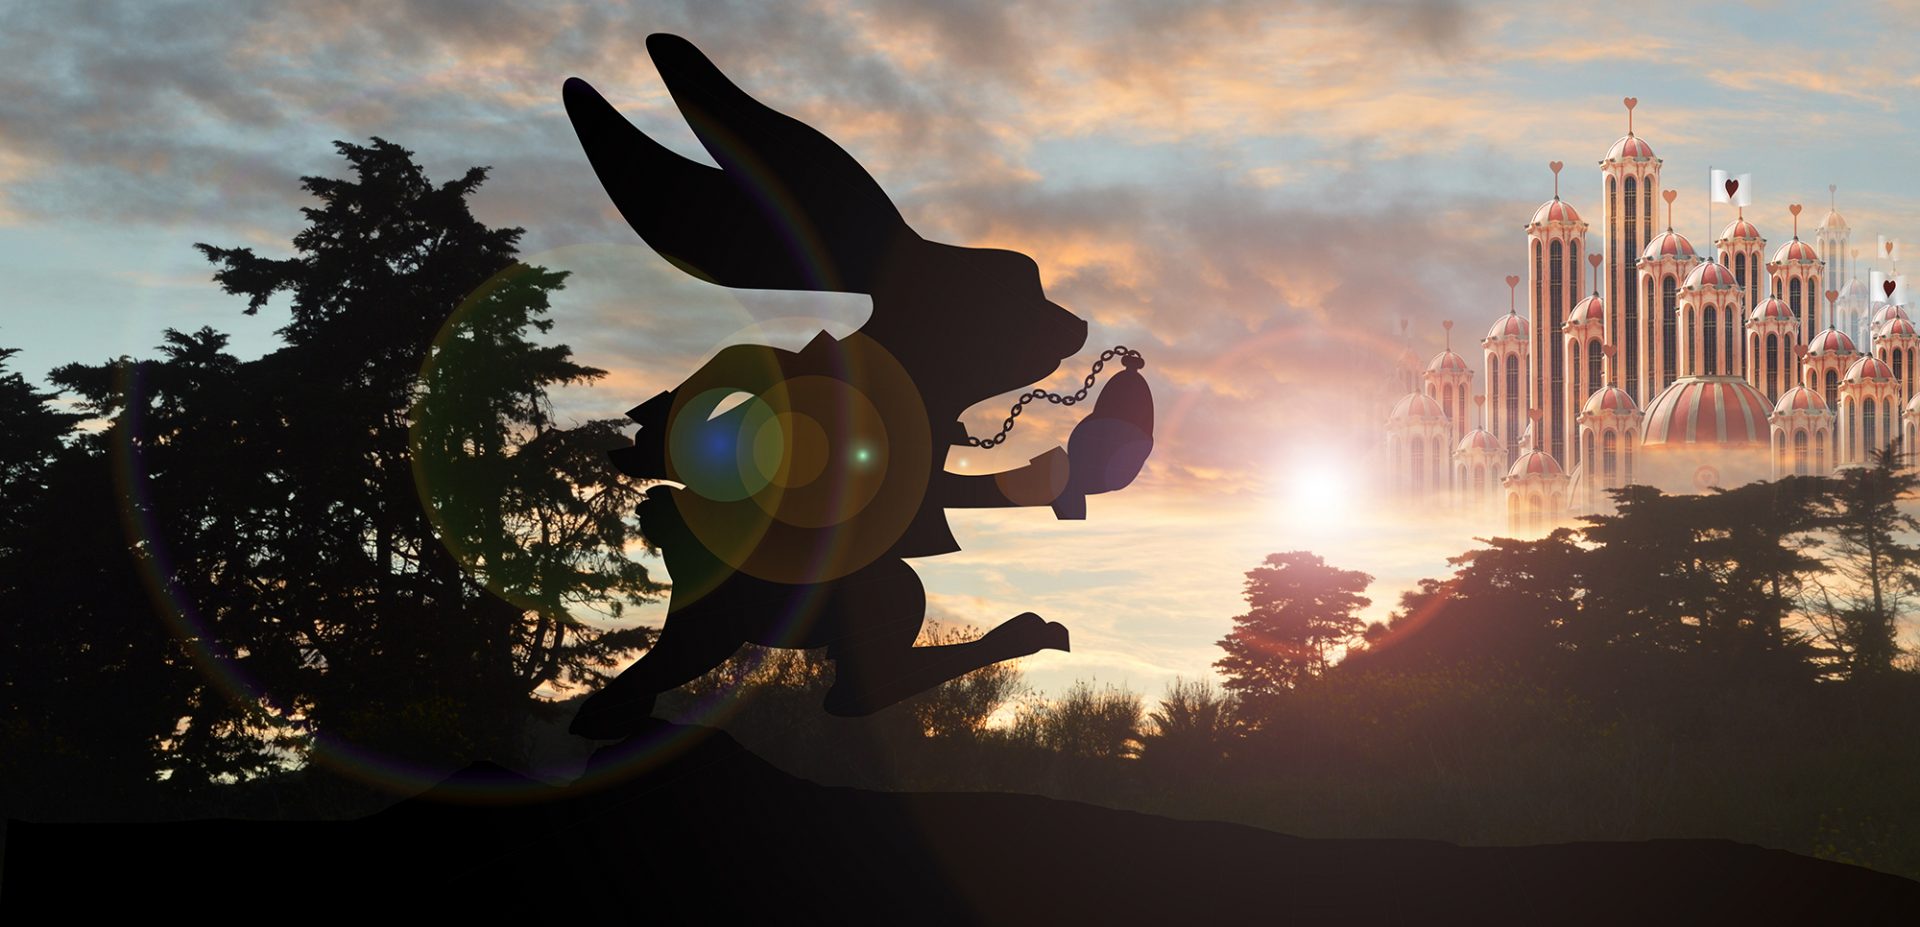 Fantasiebild mit Hase Benny Bunny und Märchen-Schloss aus der Welt von Alice im Wunderland.